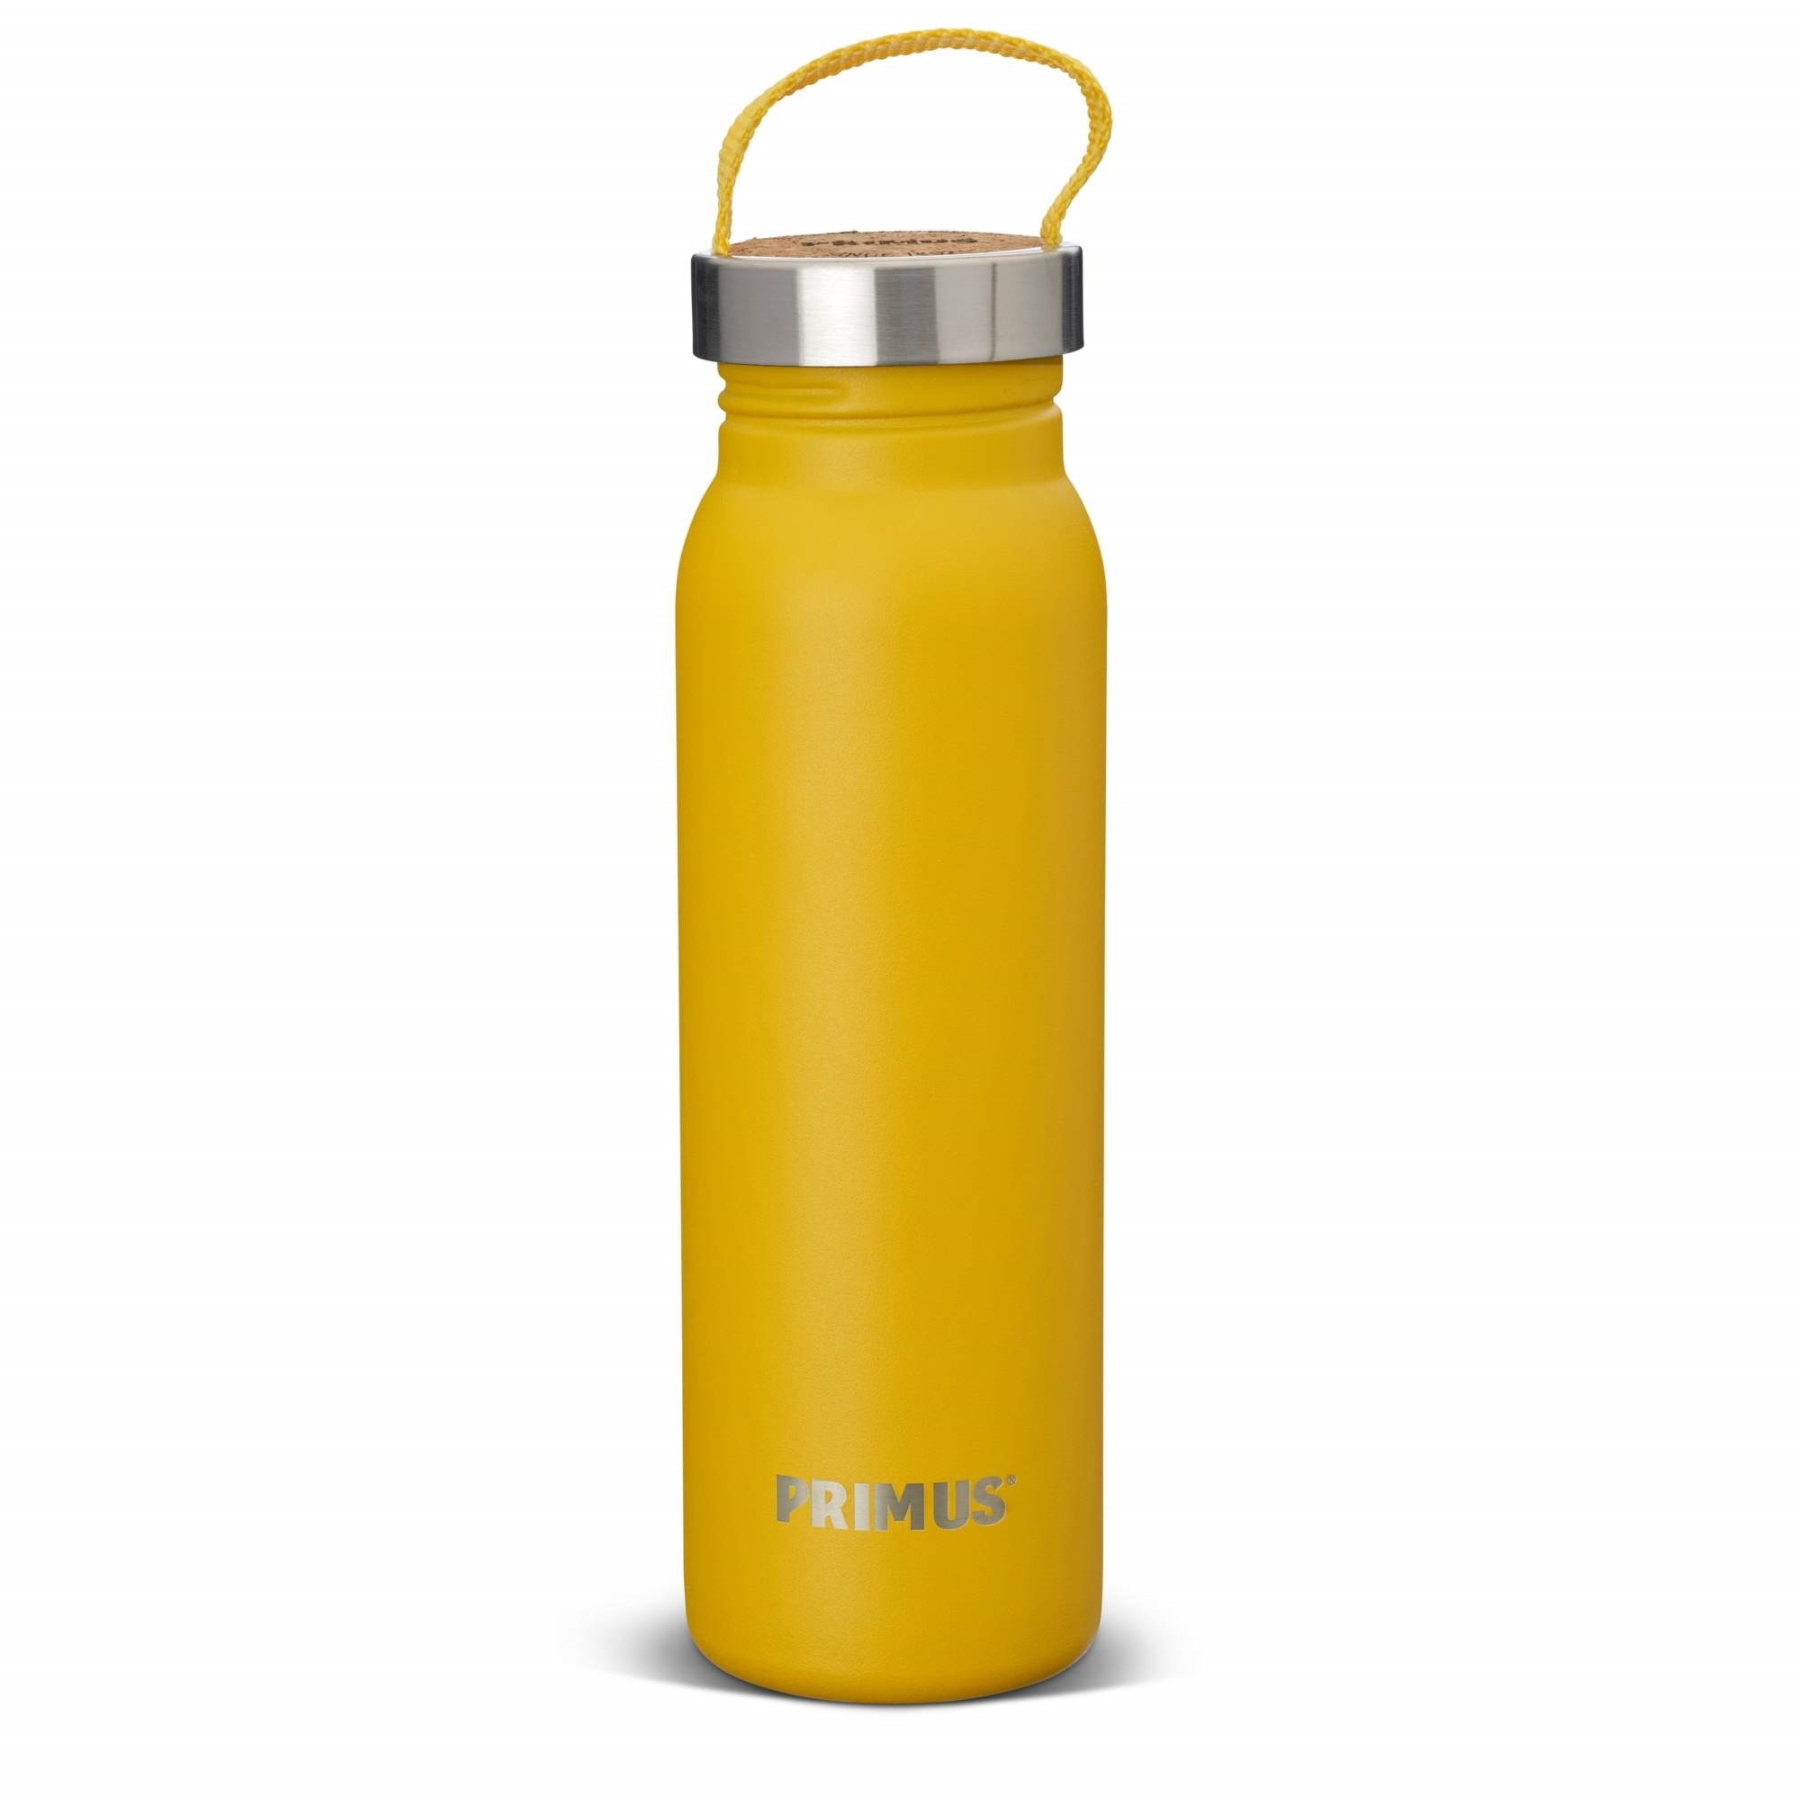 Produktbild von Primus Klunken Trinkflasche 0.7 L - yellow